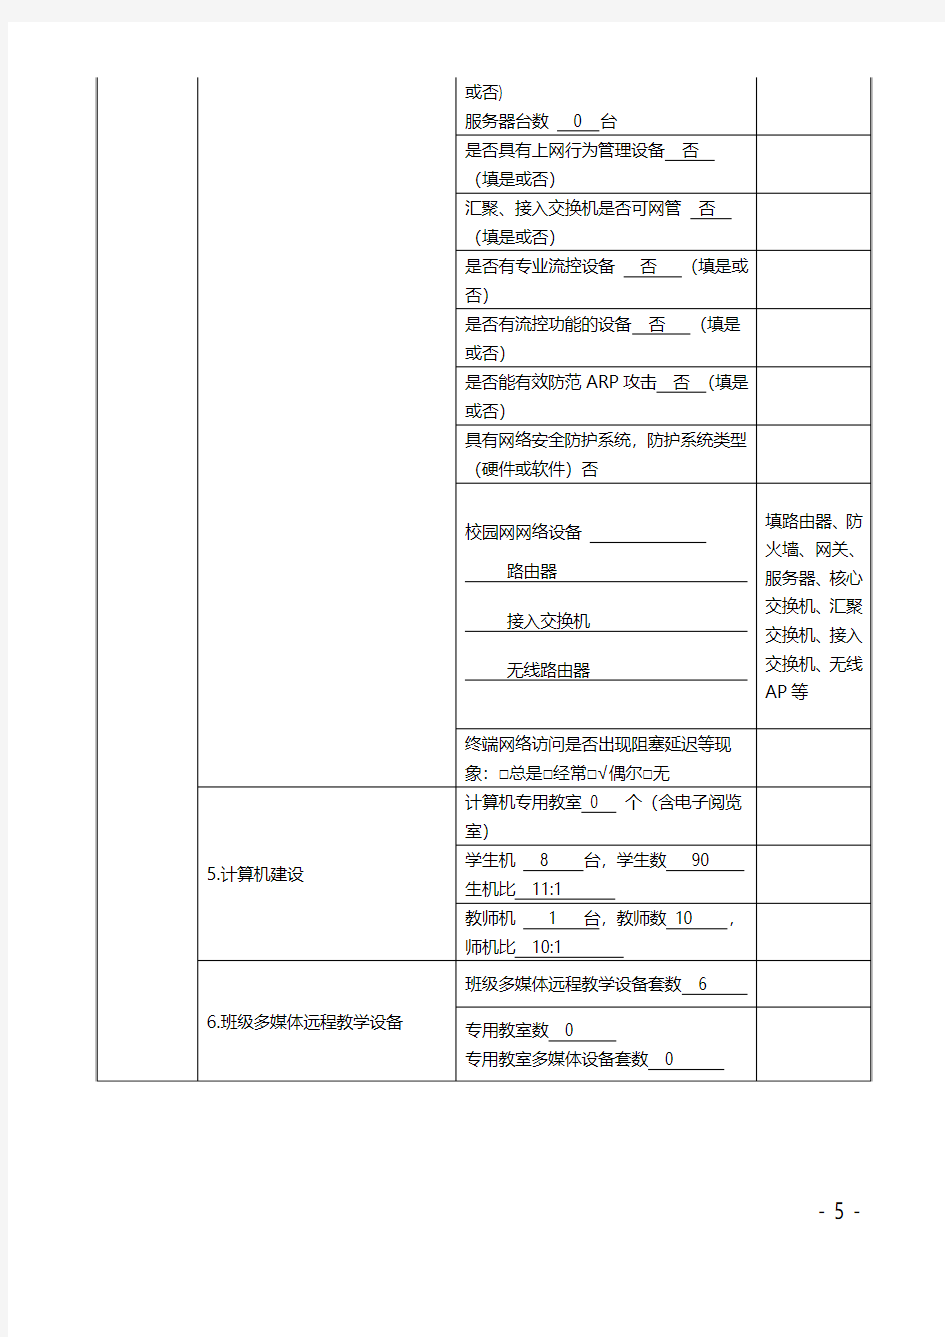 安徽省农村中小学校园网建设、班级多媒体远程教学设备管理使用情况调研表(已填)